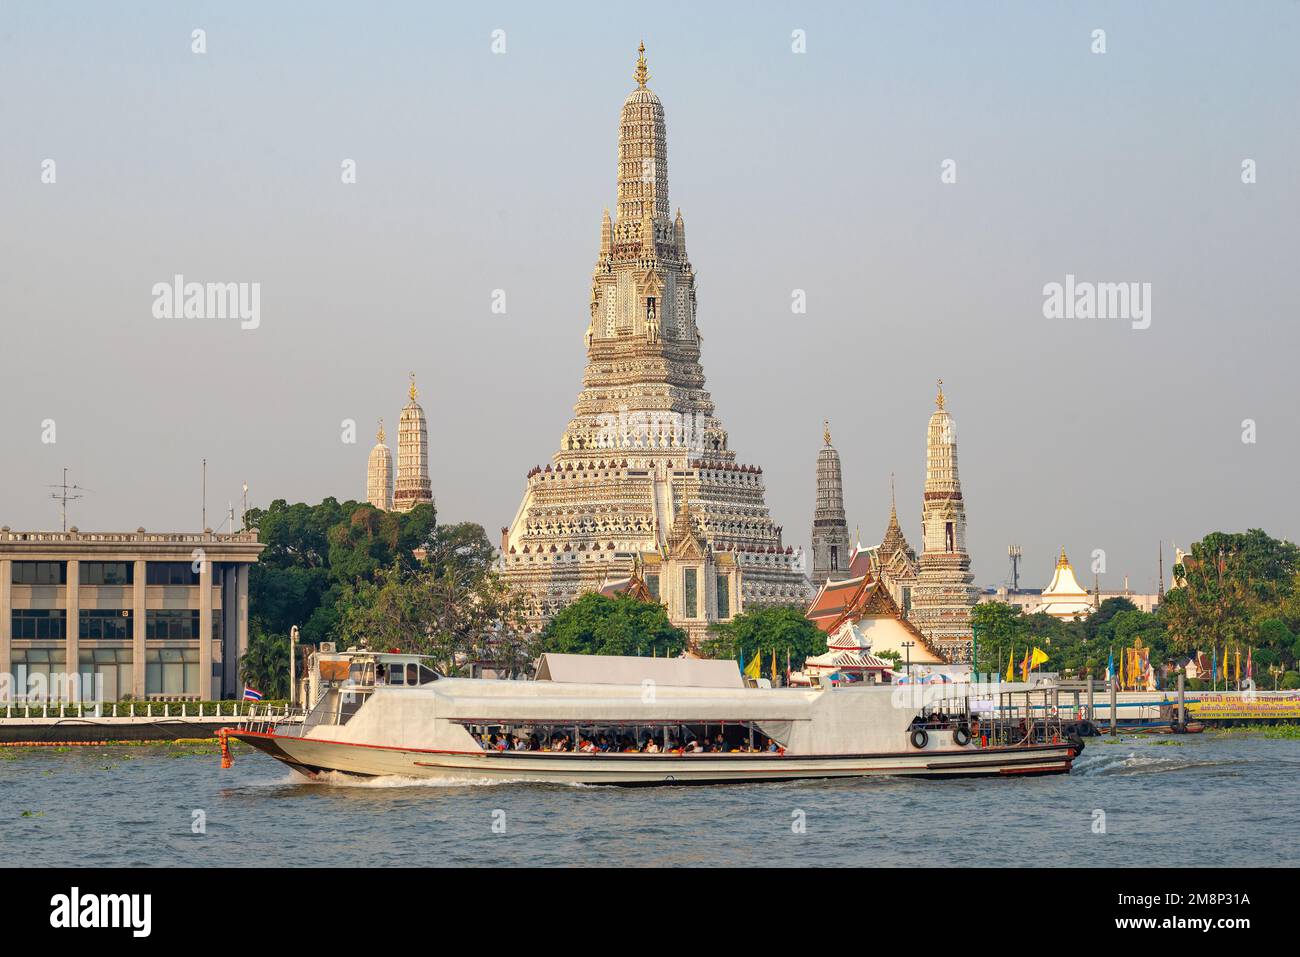 BANGKOK, THAILAND - DECEMBER 28, 2018: River bus at Wat Arun Temple. Chao Phraya River, Bangkok, Thailand Stock Photo